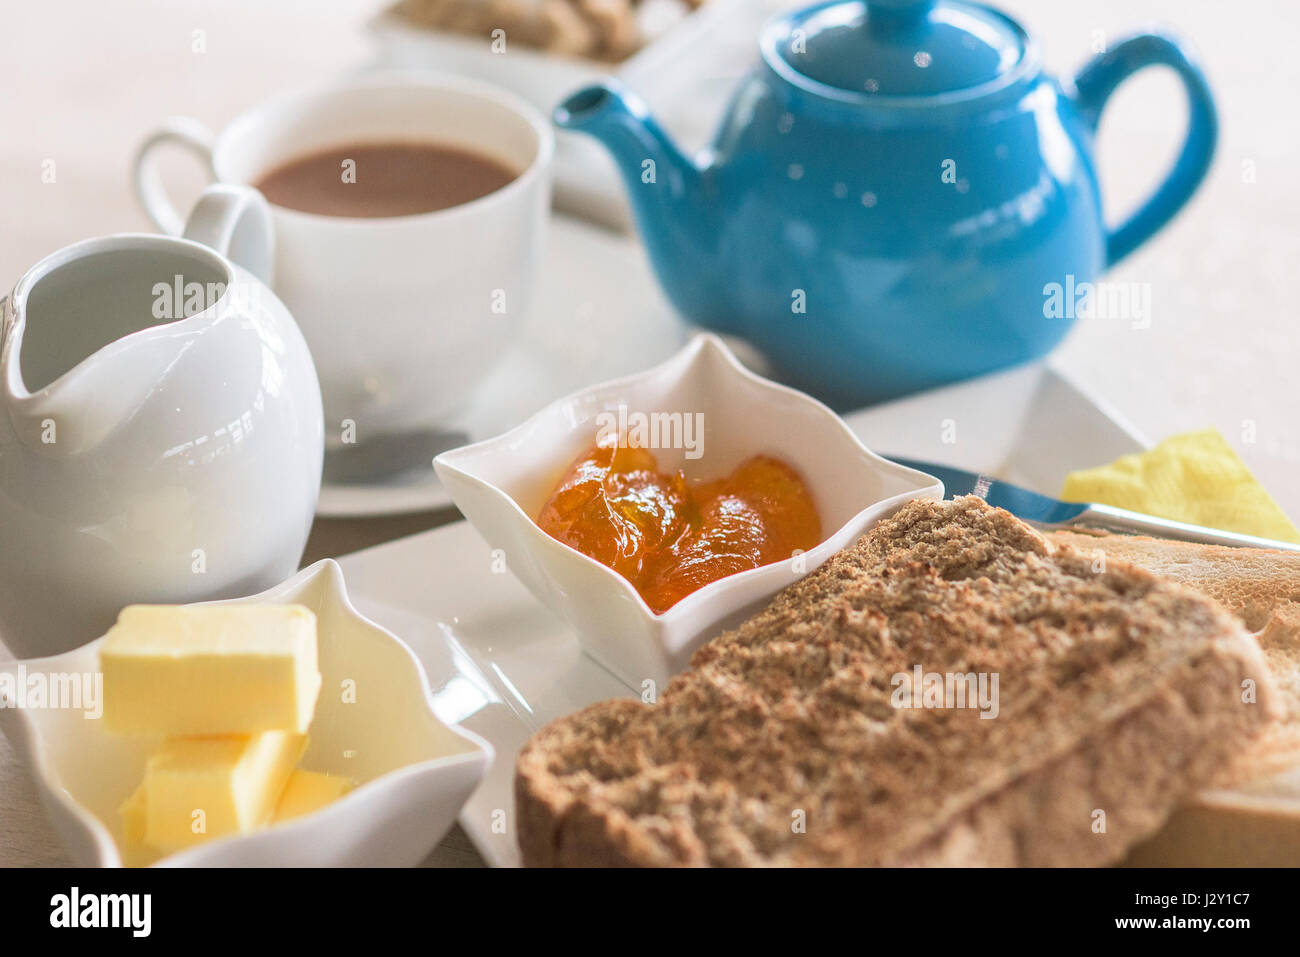 Essen Frühstück Tee Toast und Marmelade, Toast Scheiben Teekanne Geschirr Morgen Essen Restaurant Cafe Stockfoto